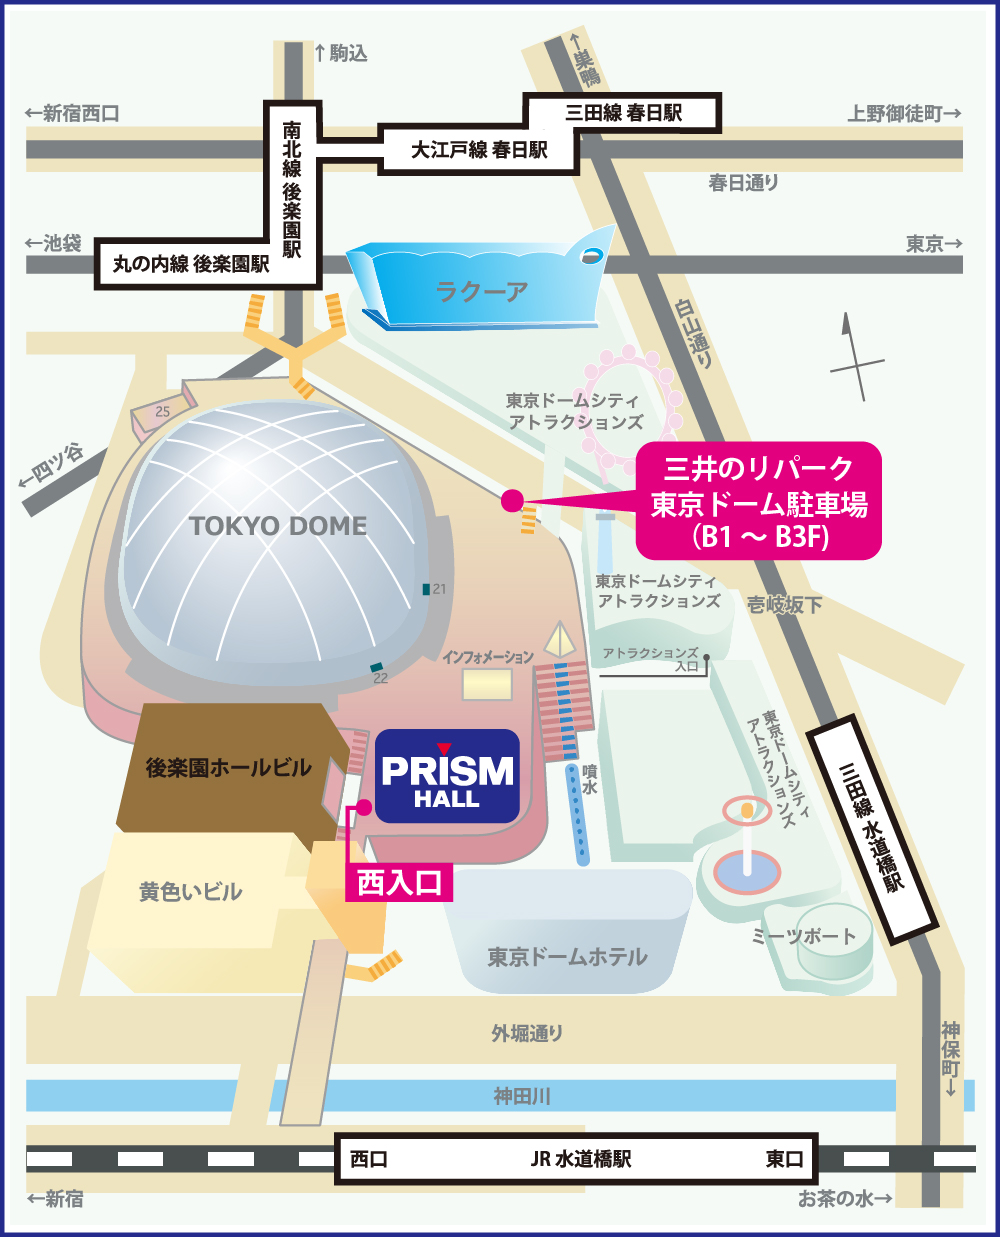 東京ドームシティ プリズムホールへのアクセス